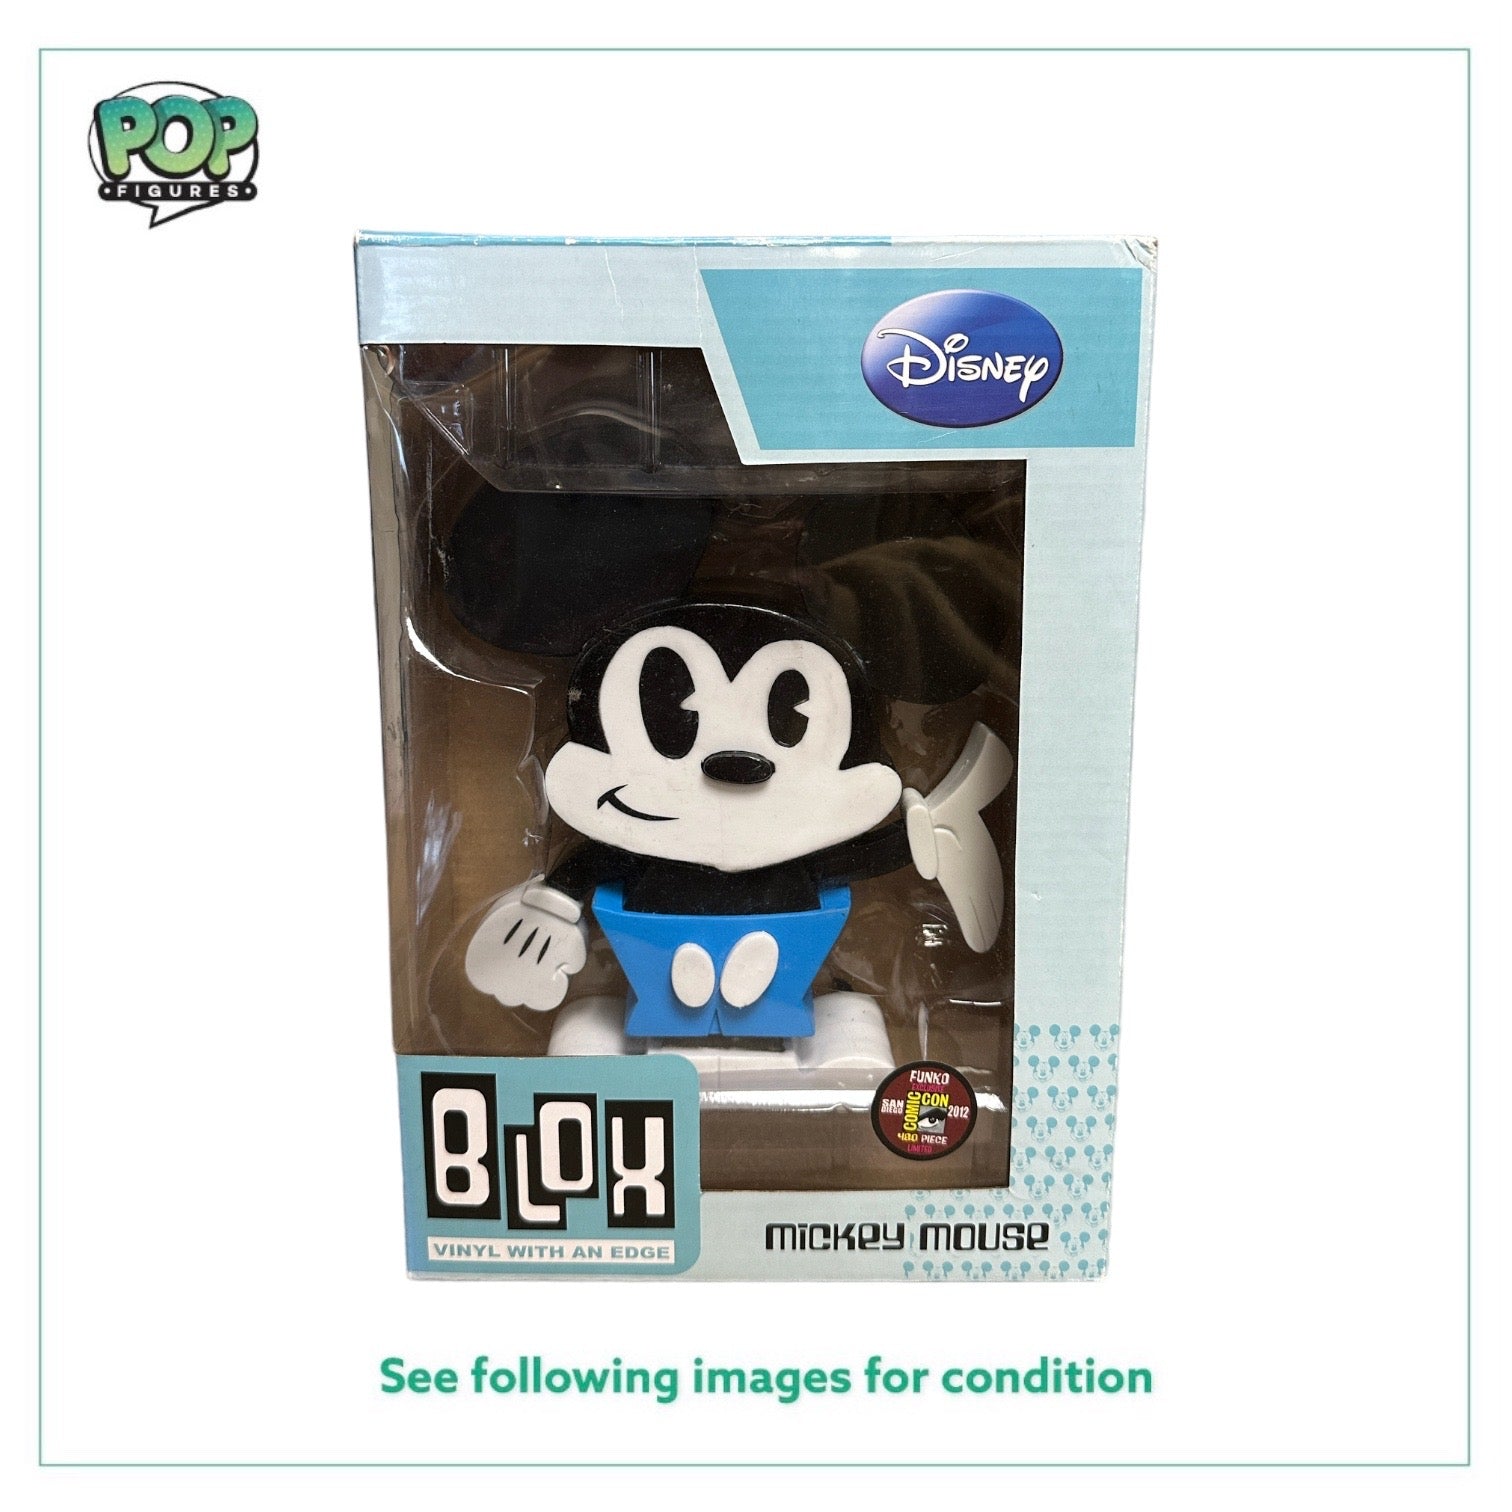 Mickey Mouse Funko Blox Vinyl Figure! - Disney - SDCC 2012 Exclusive LE480 Pcs - Condition 7/10